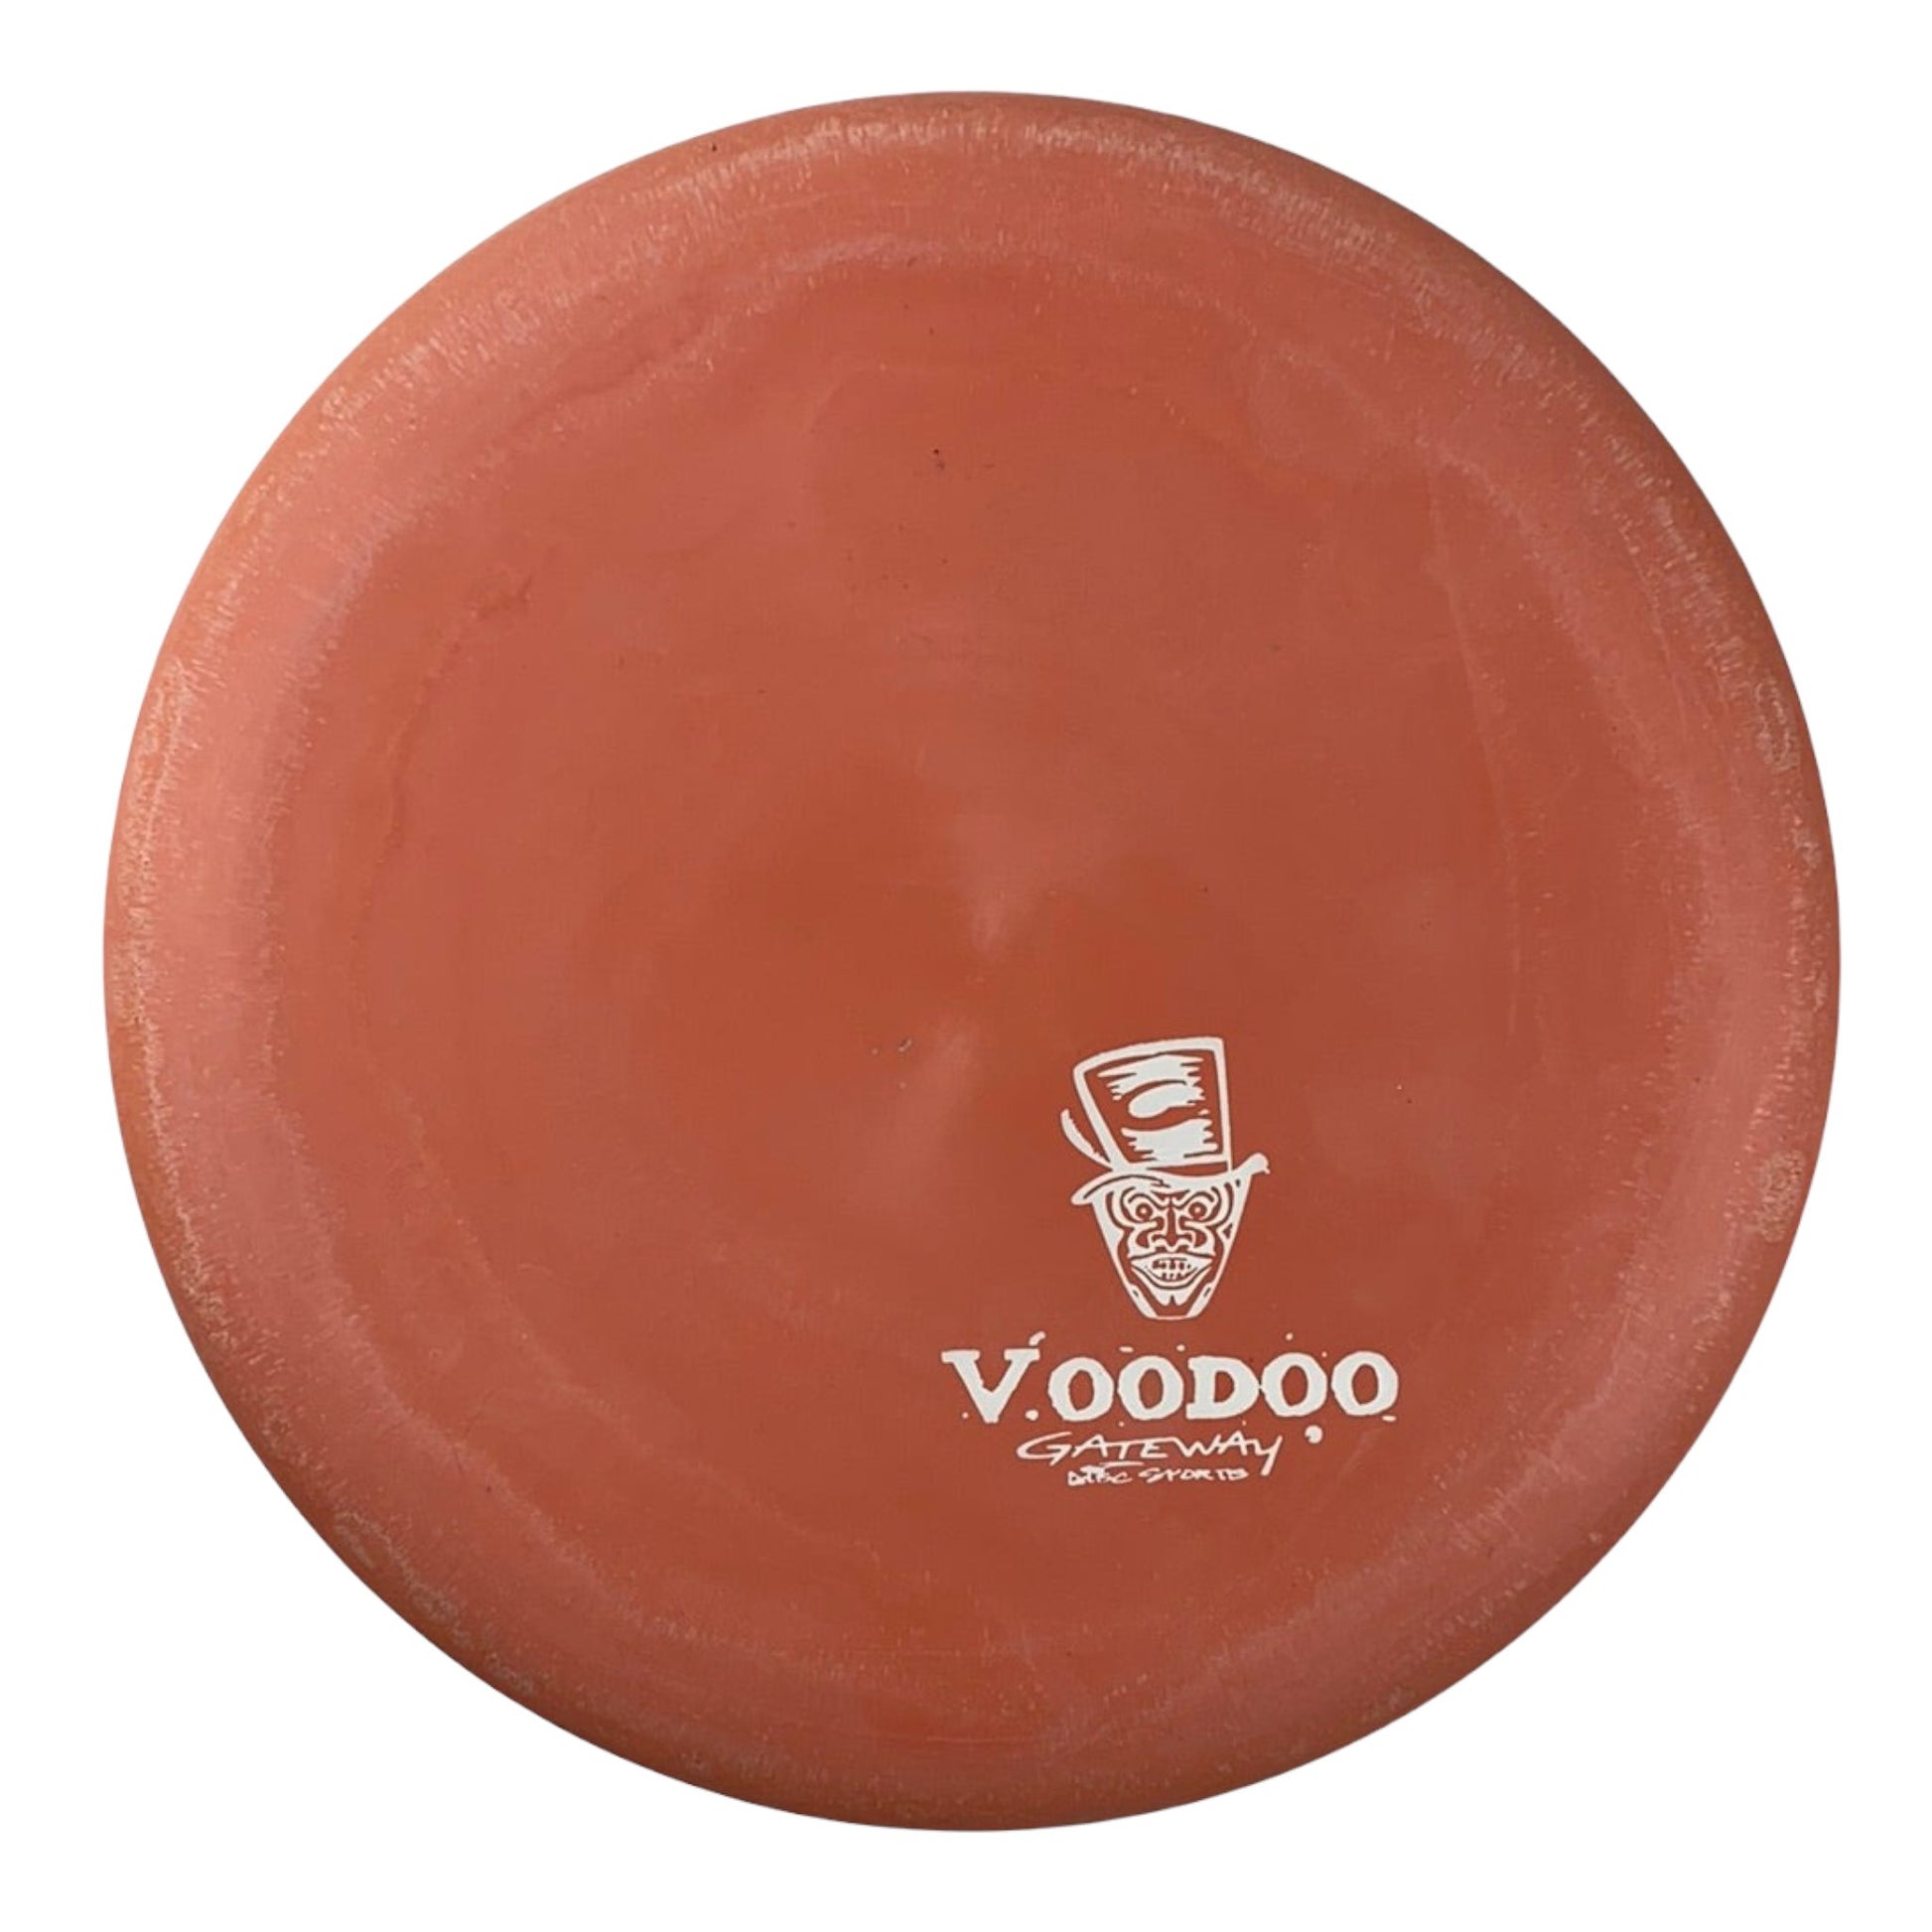 Gateway Disc Sports Voodoo | Eraser | Pink/White 162-171g Disc Golf